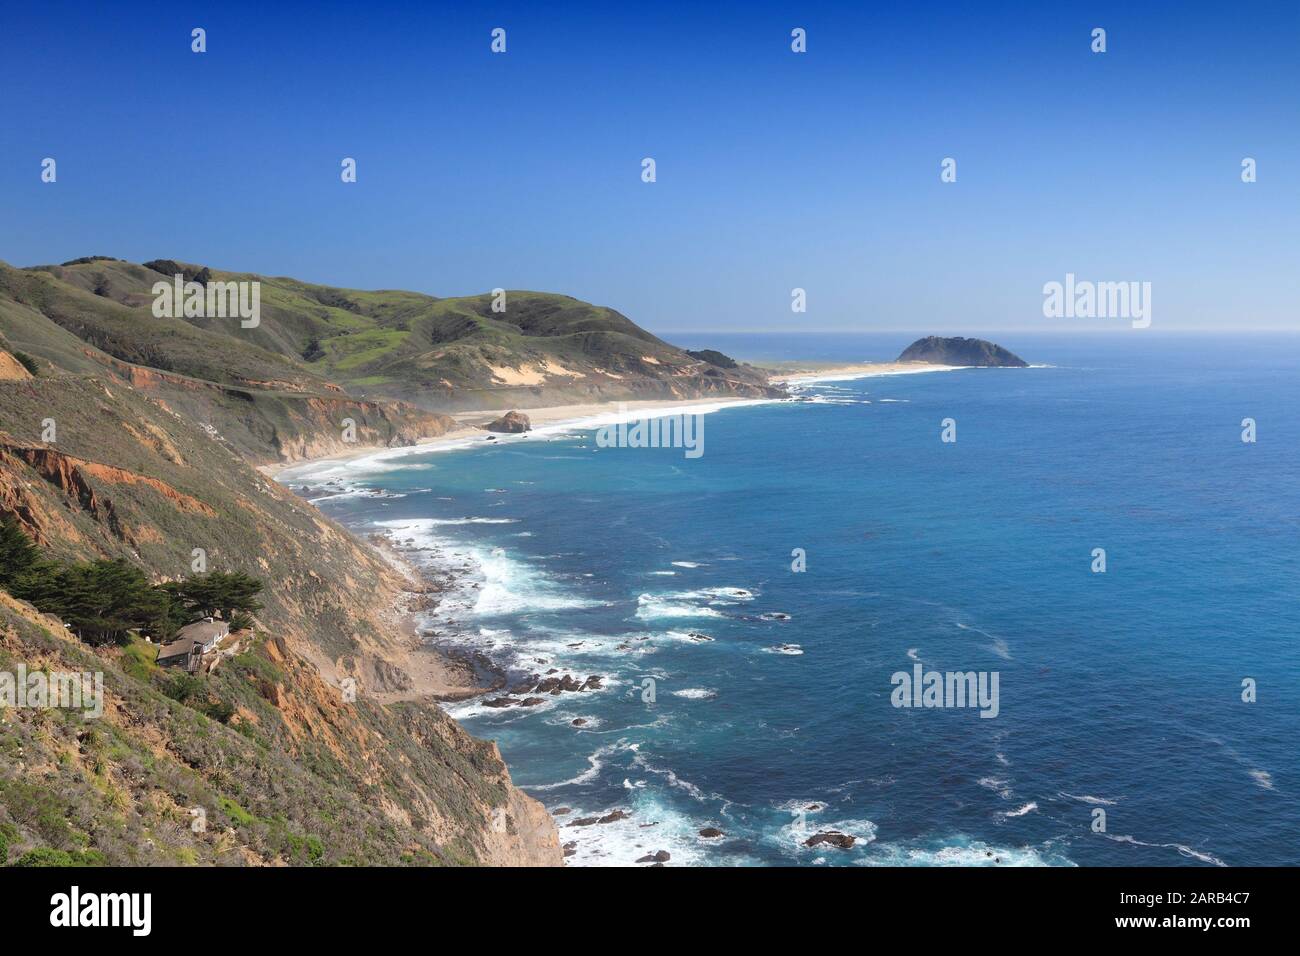 Kalifornische Landschaft - Pazifikküste in der Region Big Sur. Kalifornische Pazifikküste. Stockfoto